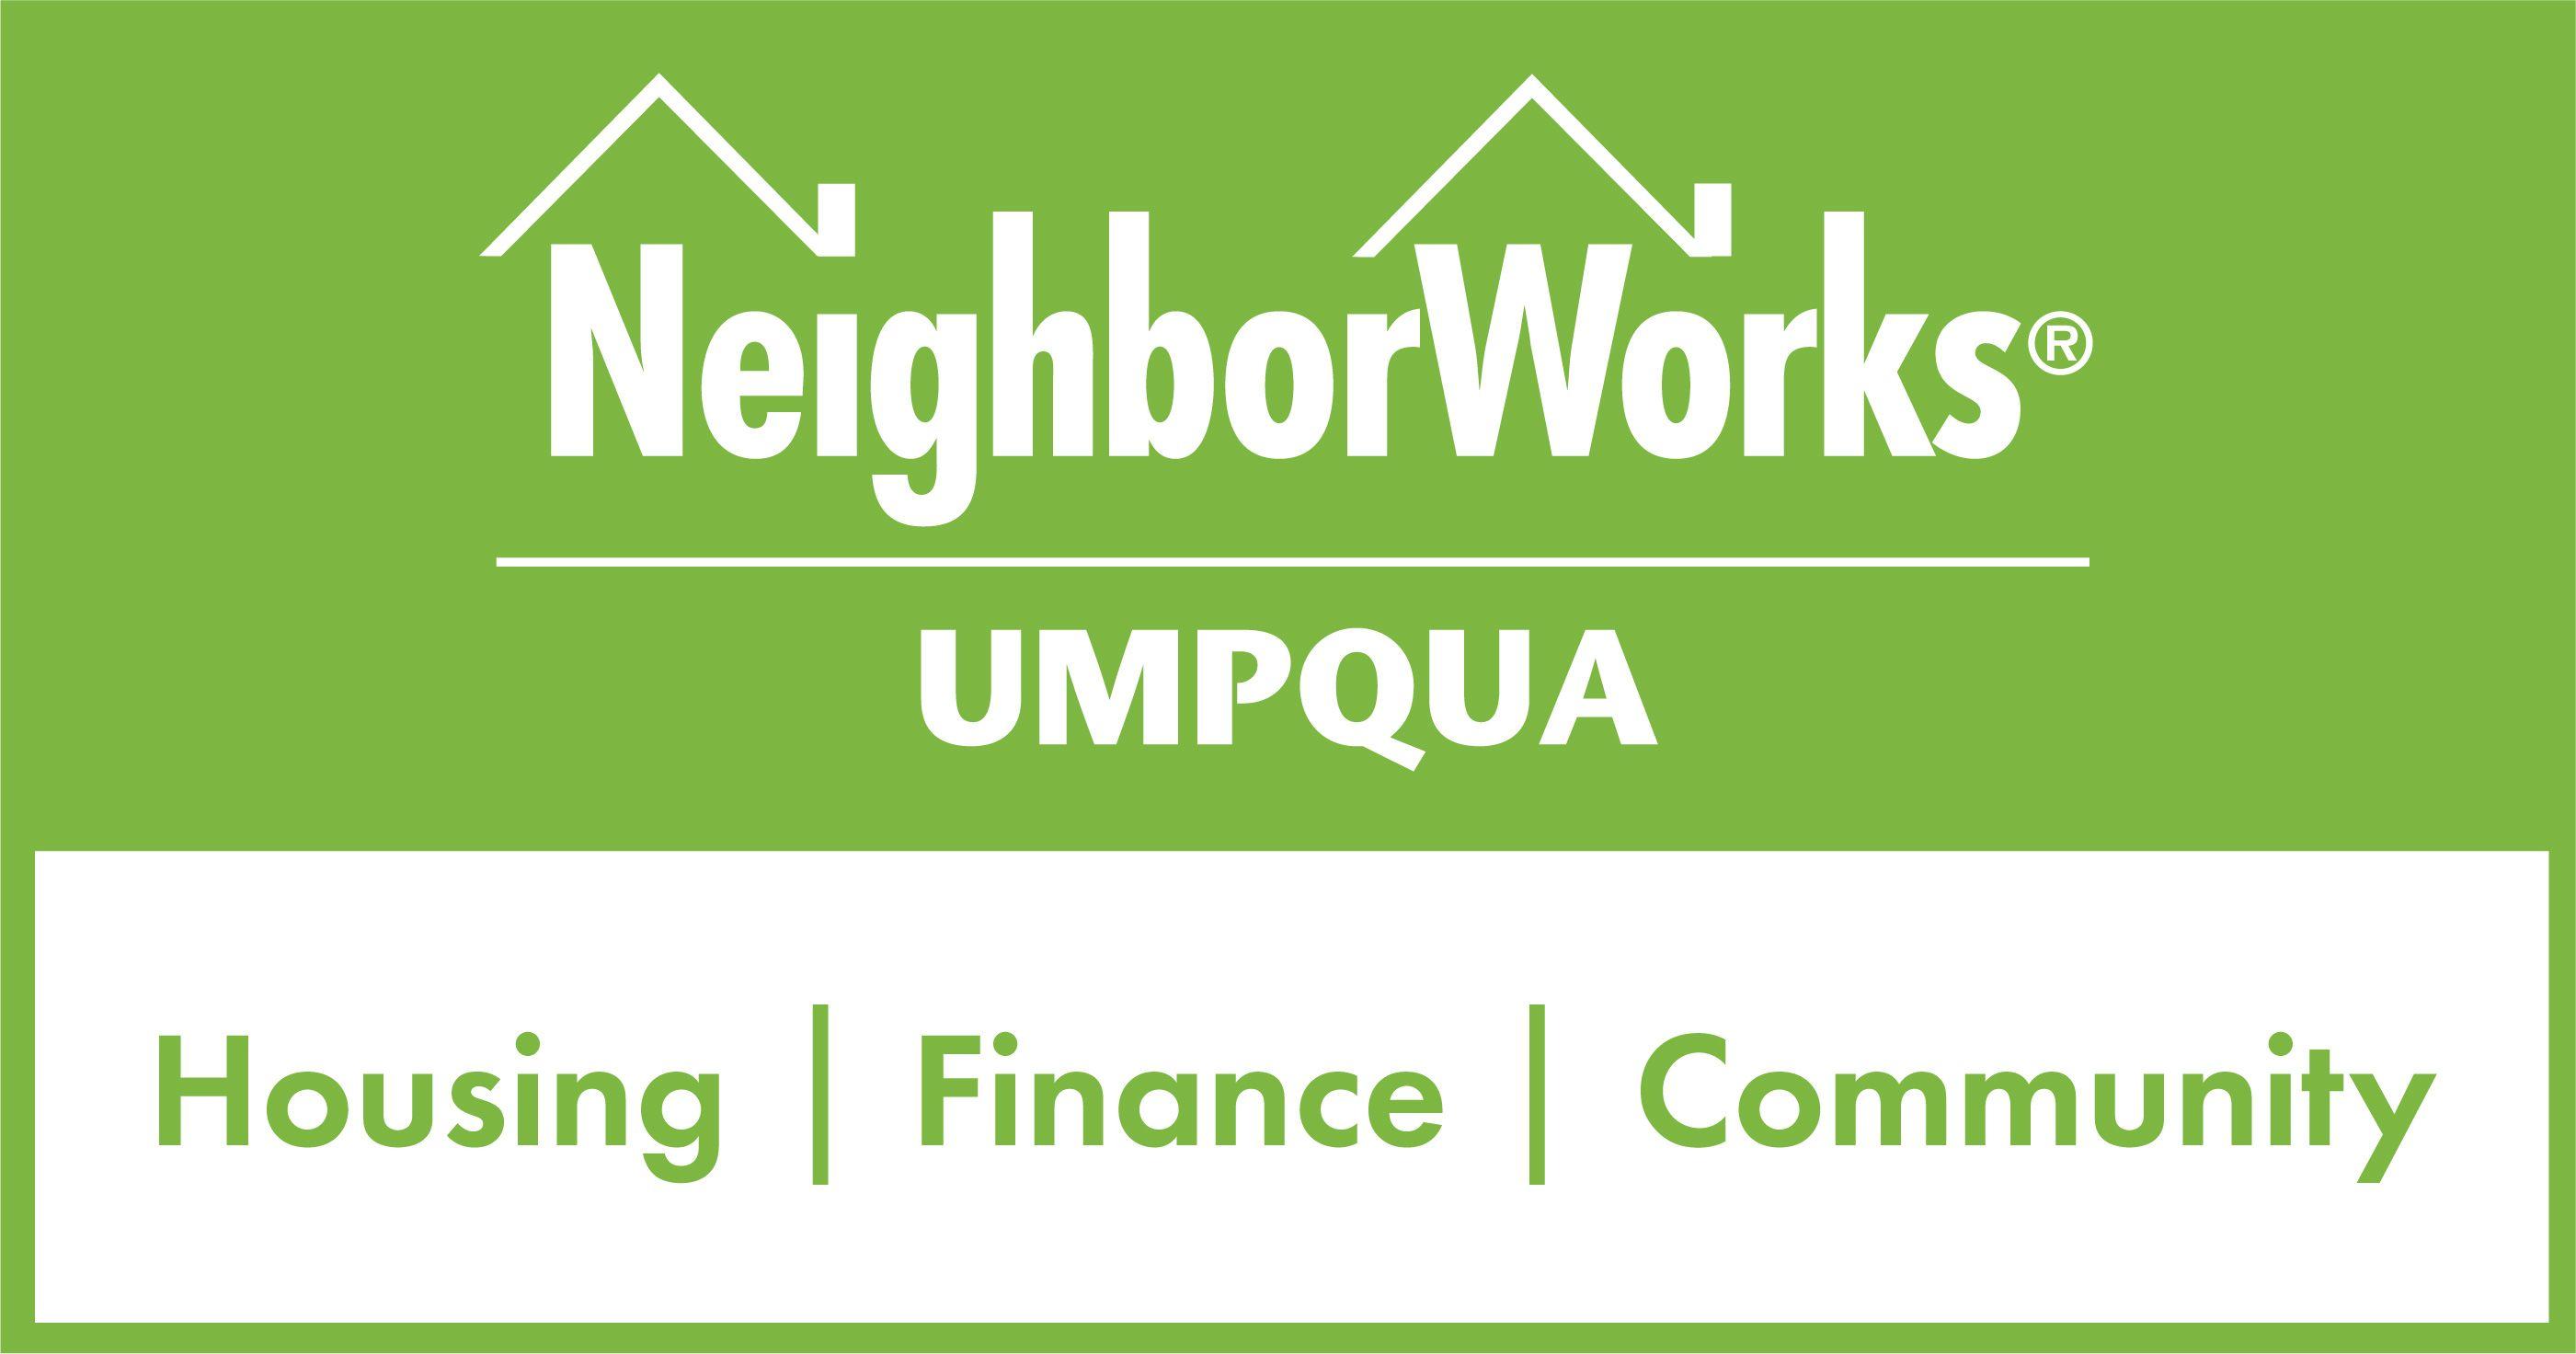 NeighborWorks Green Organization Logo - Home - NeighborWorks Umpqua